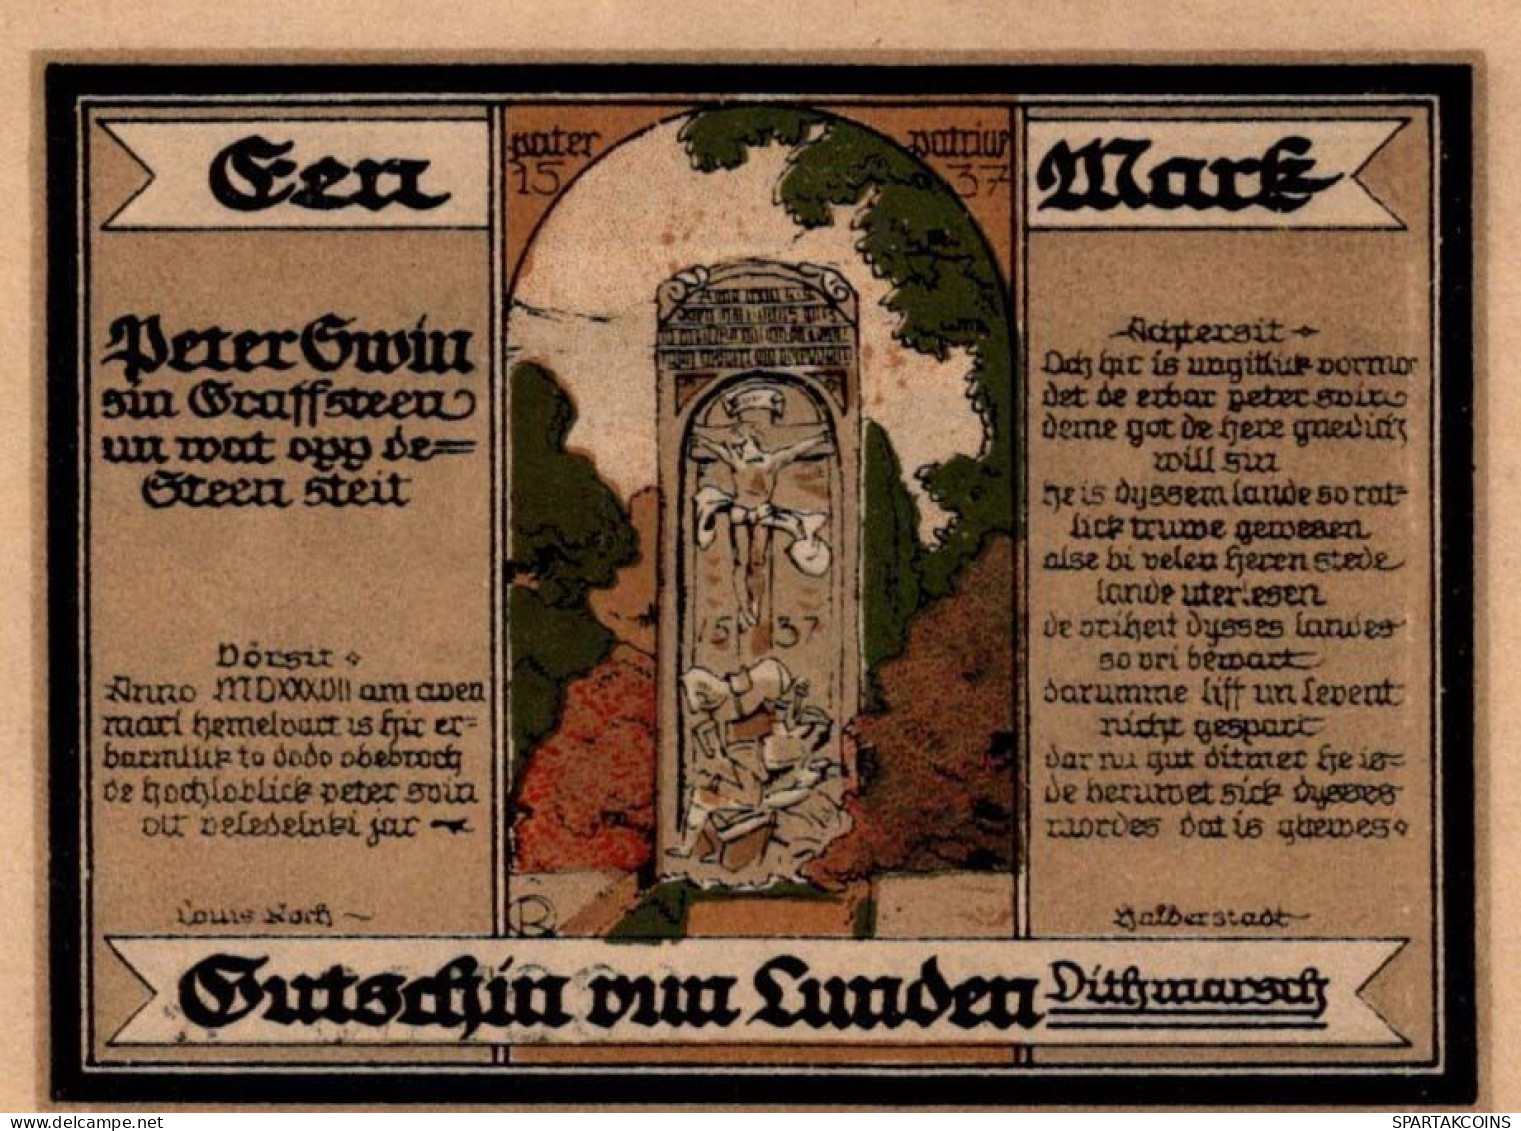 100 PFENNIG 1921 Stadt LUNDEN Schleswig-Holstein UNC DEUTSCHLAND Notgeld #PI088 - [11] Emissions Locales